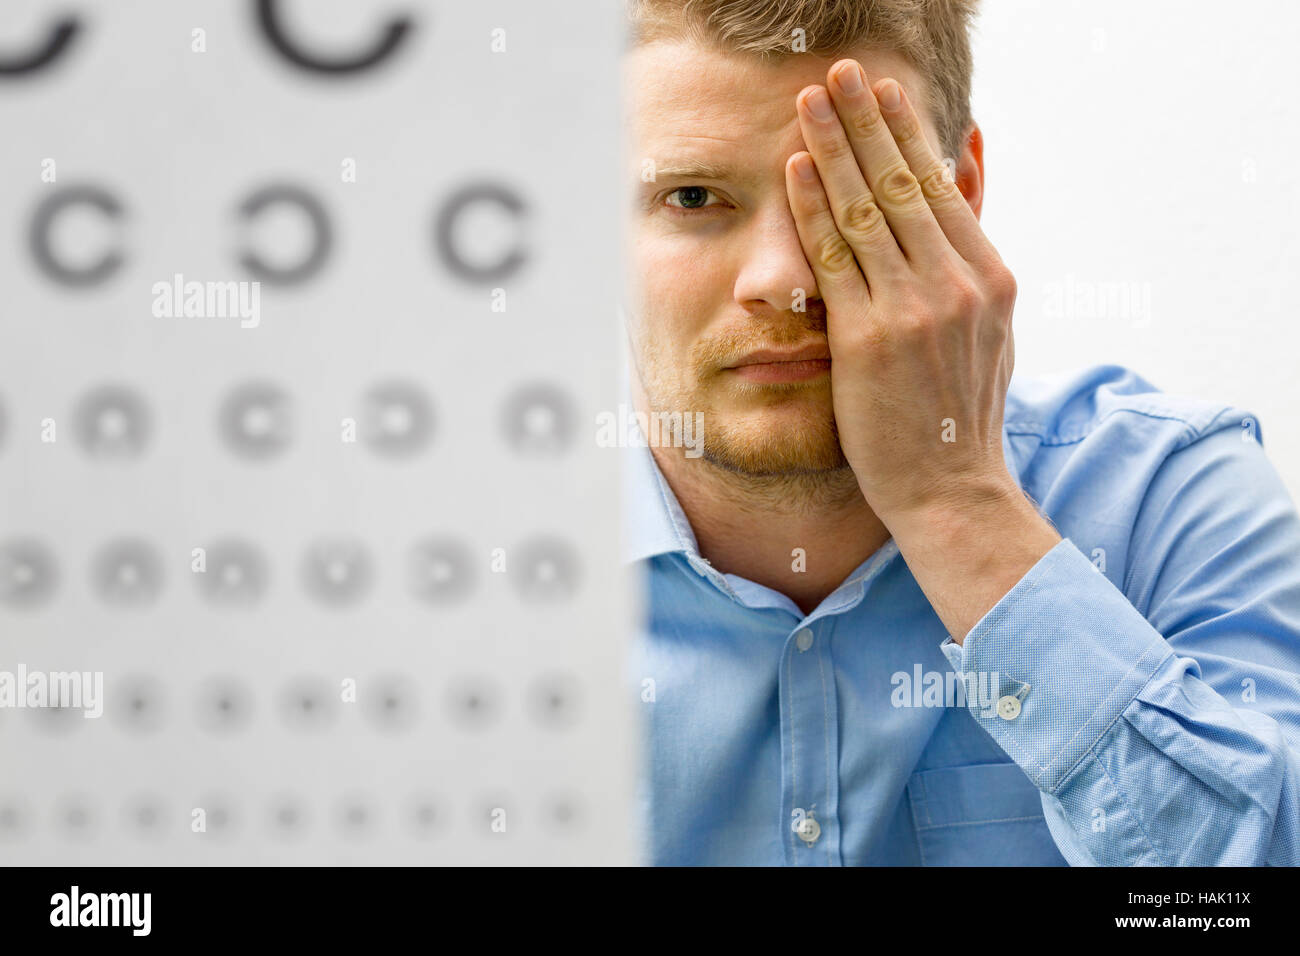 Sehkraft überprüfen. männliche Patienten unter Vision Augenuntersuchung Stockfoto